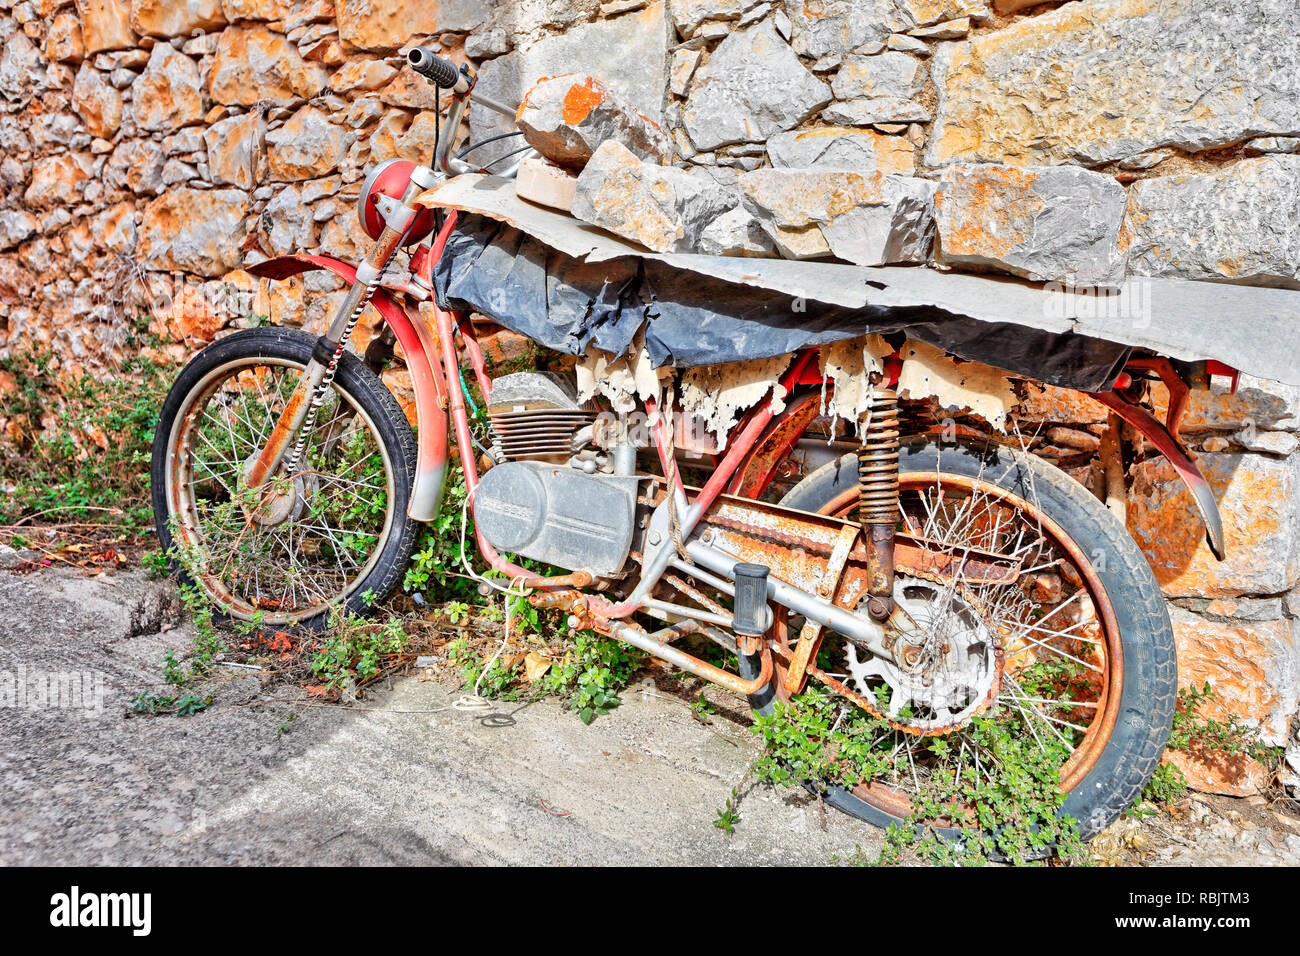 Ruiné moto dans le village médiéval de Vessa de mastic sur l'île de Chios, Grèce Banque D'Images